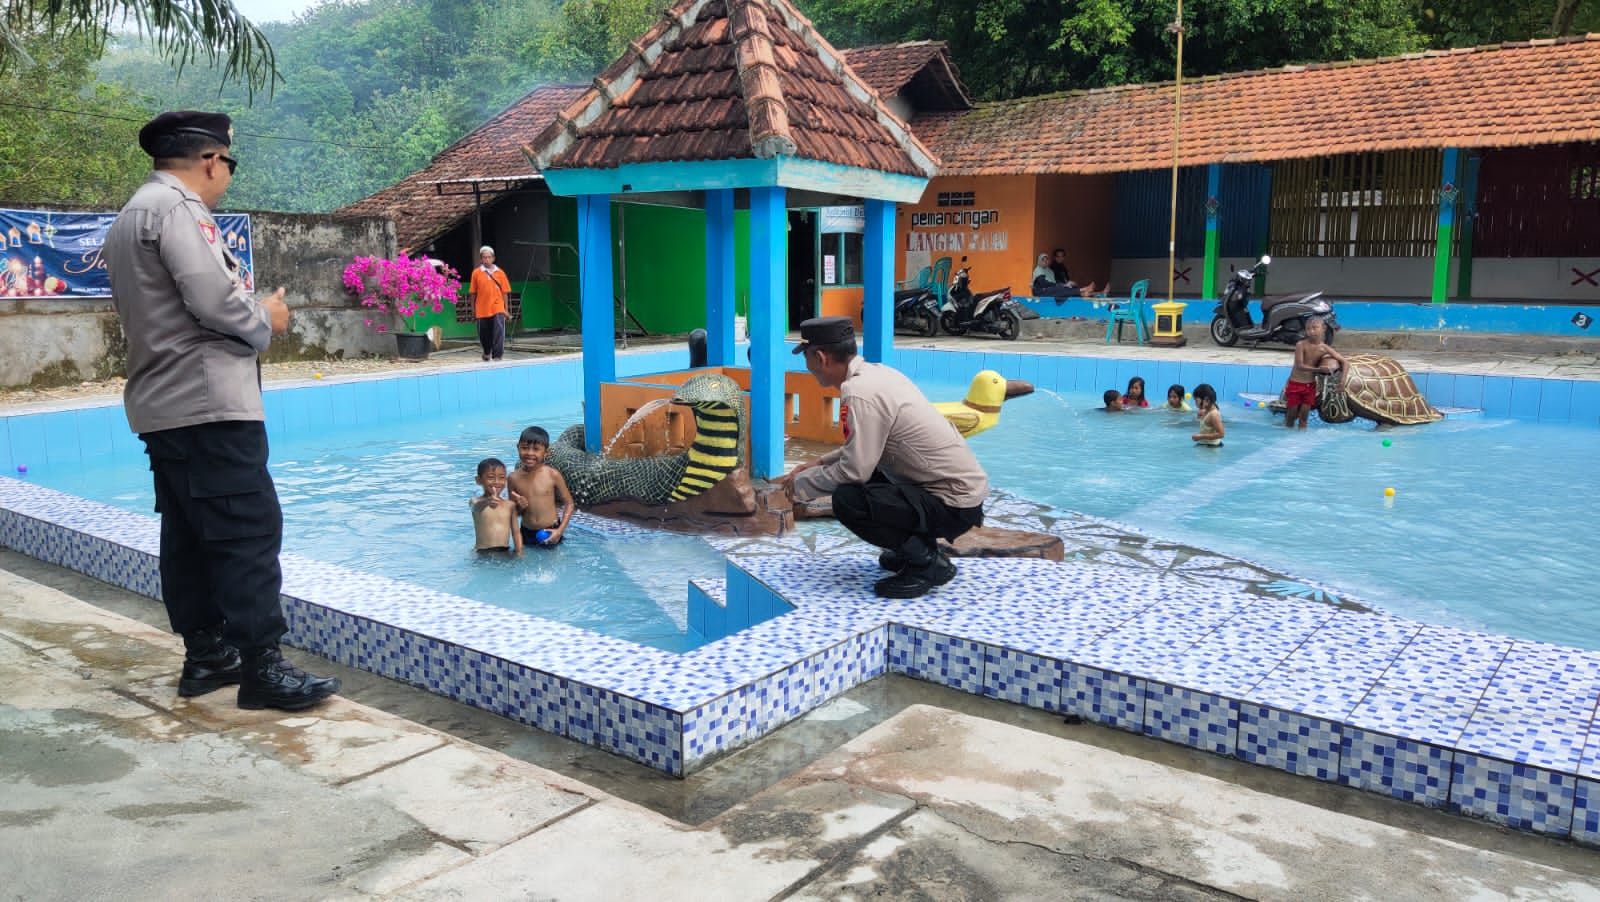 Pemberian imbauan kepada anak-anak yang berenang di kompleks wisata Jati Pohon Indah.